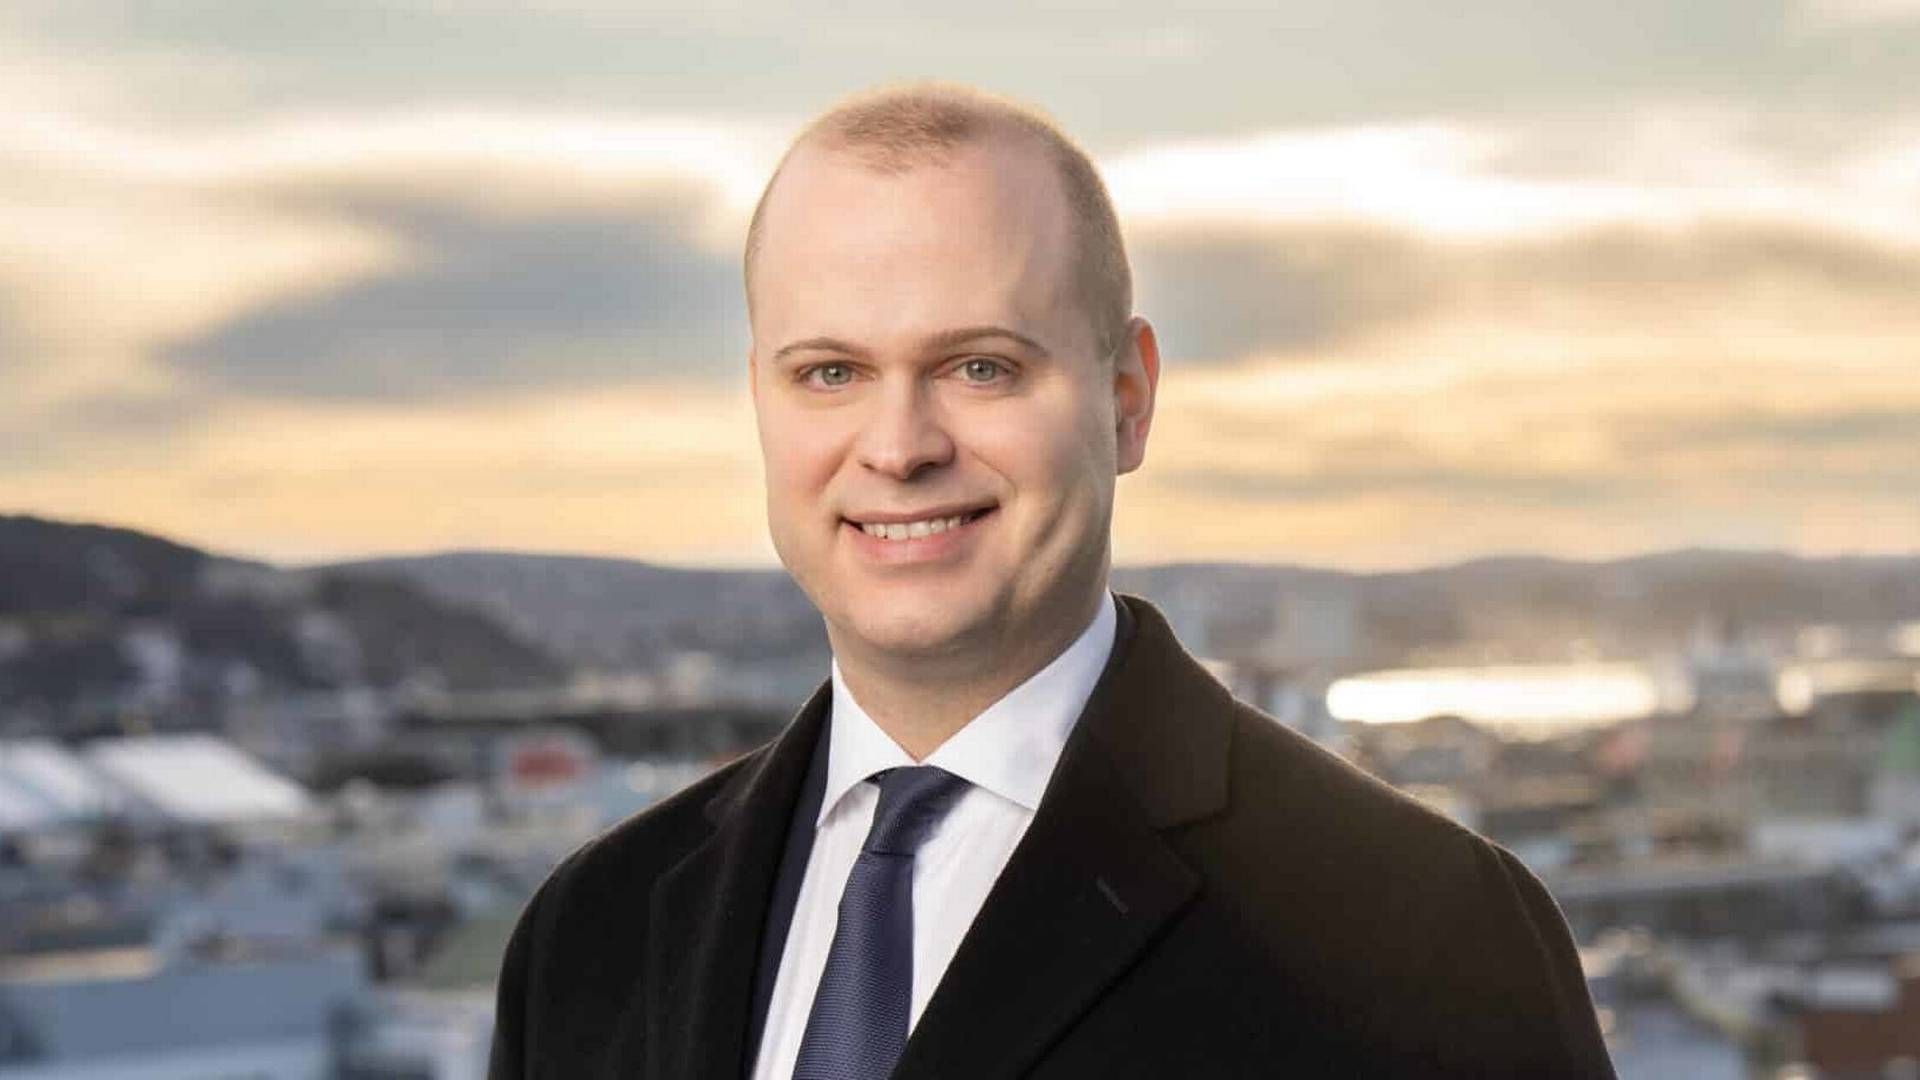 BLIR PARTNER: Vegard André Fiskerstrand går fra en tilværelse som senioradvokat i Schjødt til partnerstatus i Hjort.